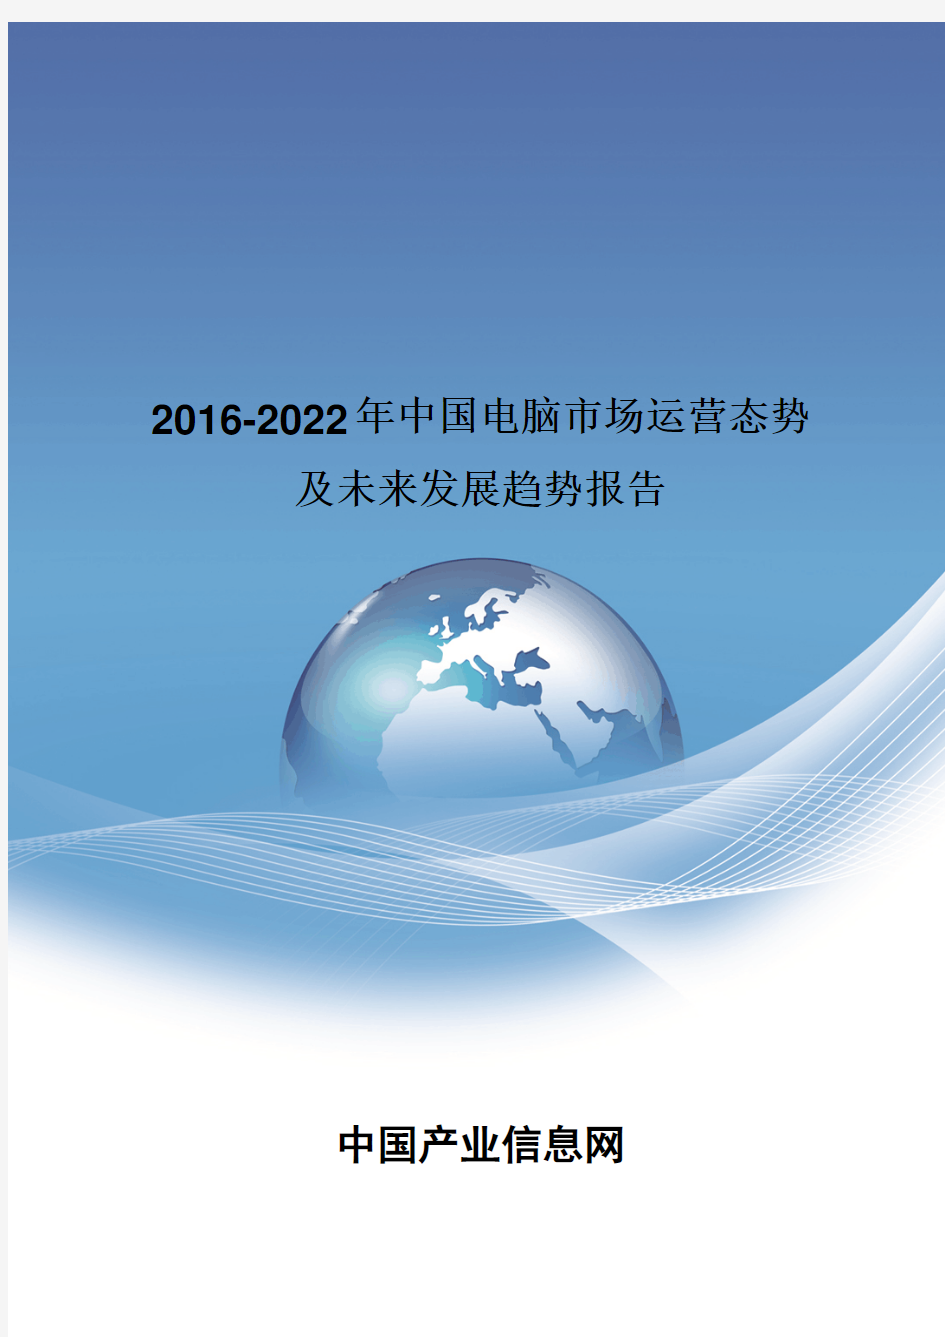 2016-2022年中国电脑市场运营态势报告